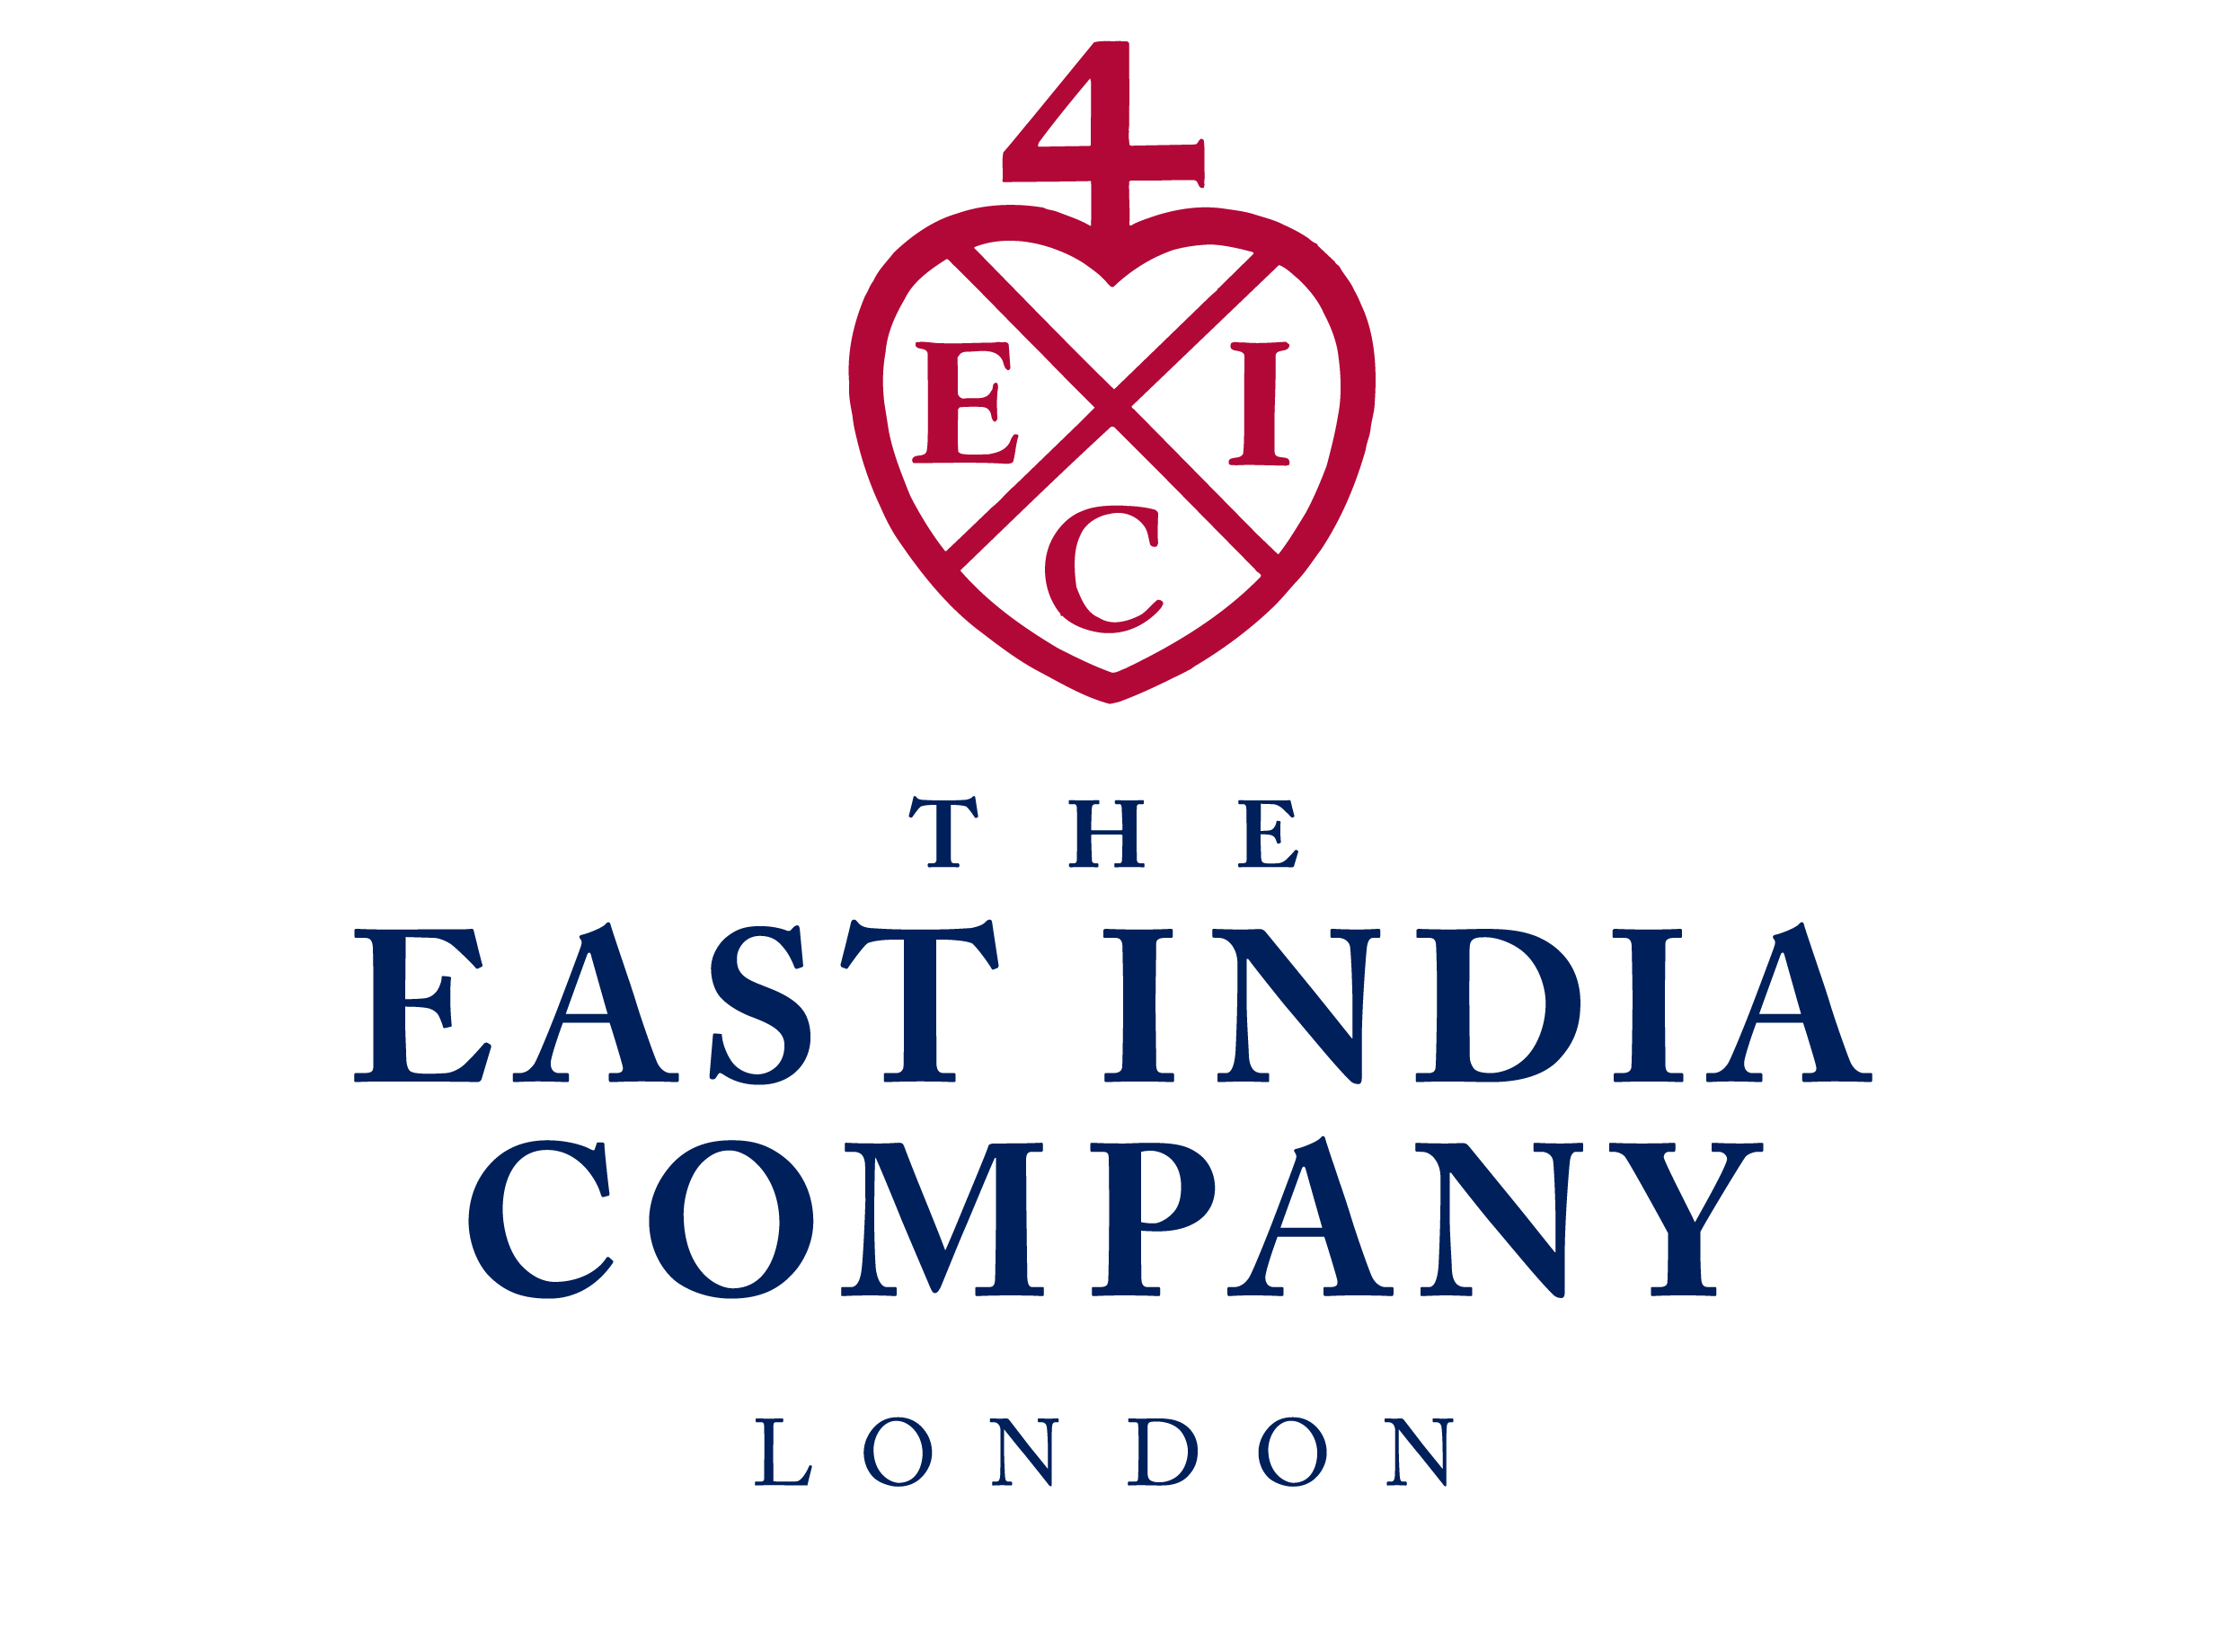 India Company Logo - The East India Company